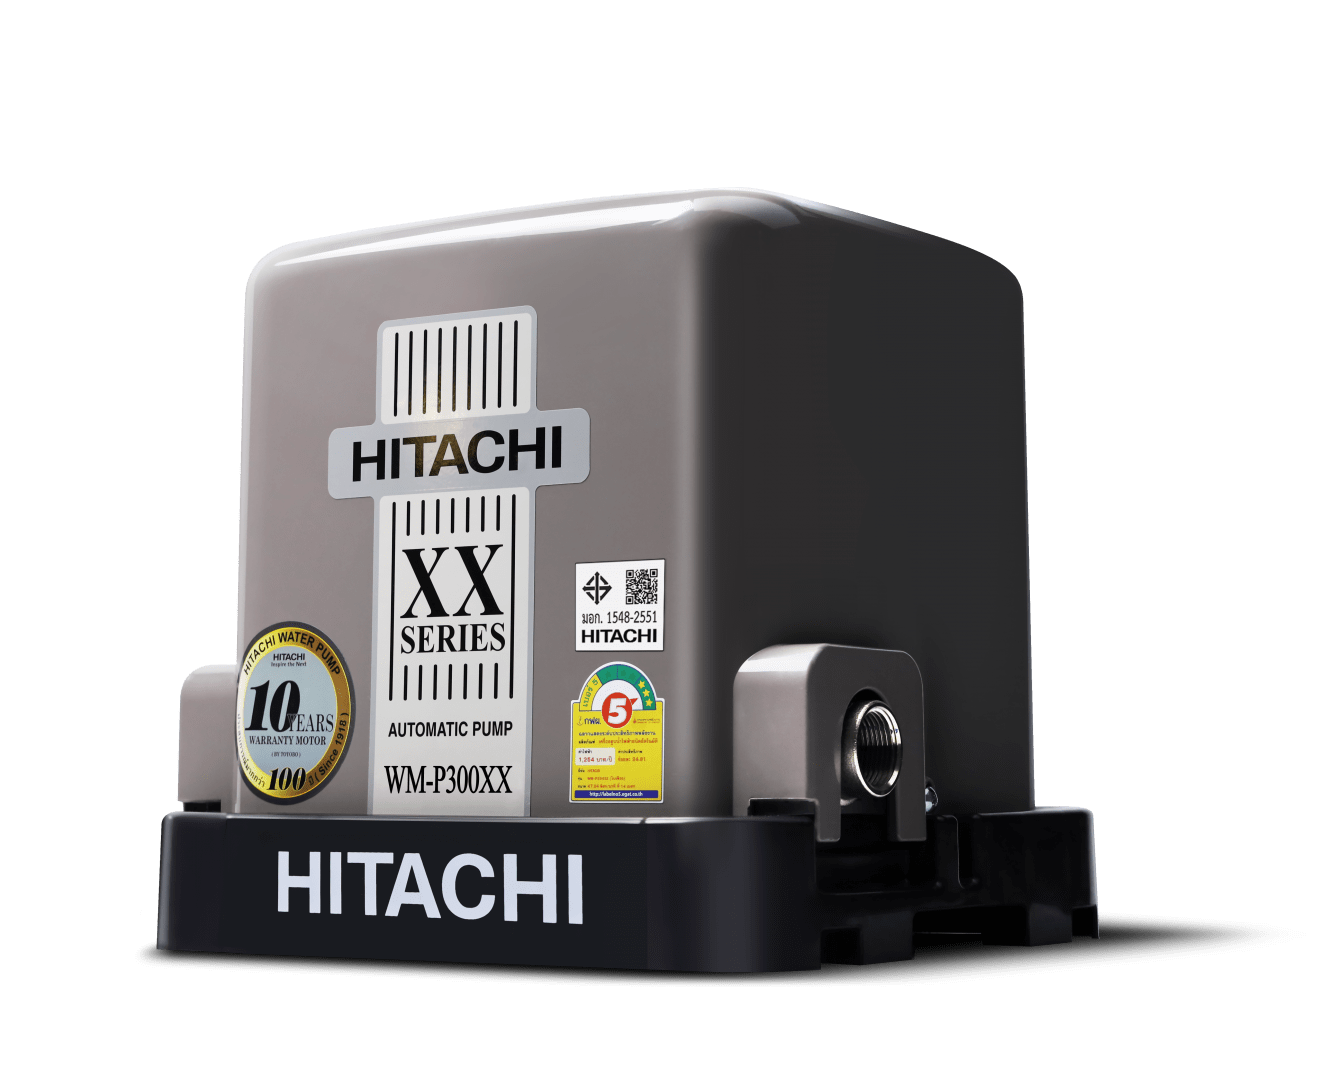 ปั๊มน้ำชนิดแรงดันคงที่ ขนาด 300 วัตต์ HITACHI WM-P300XX